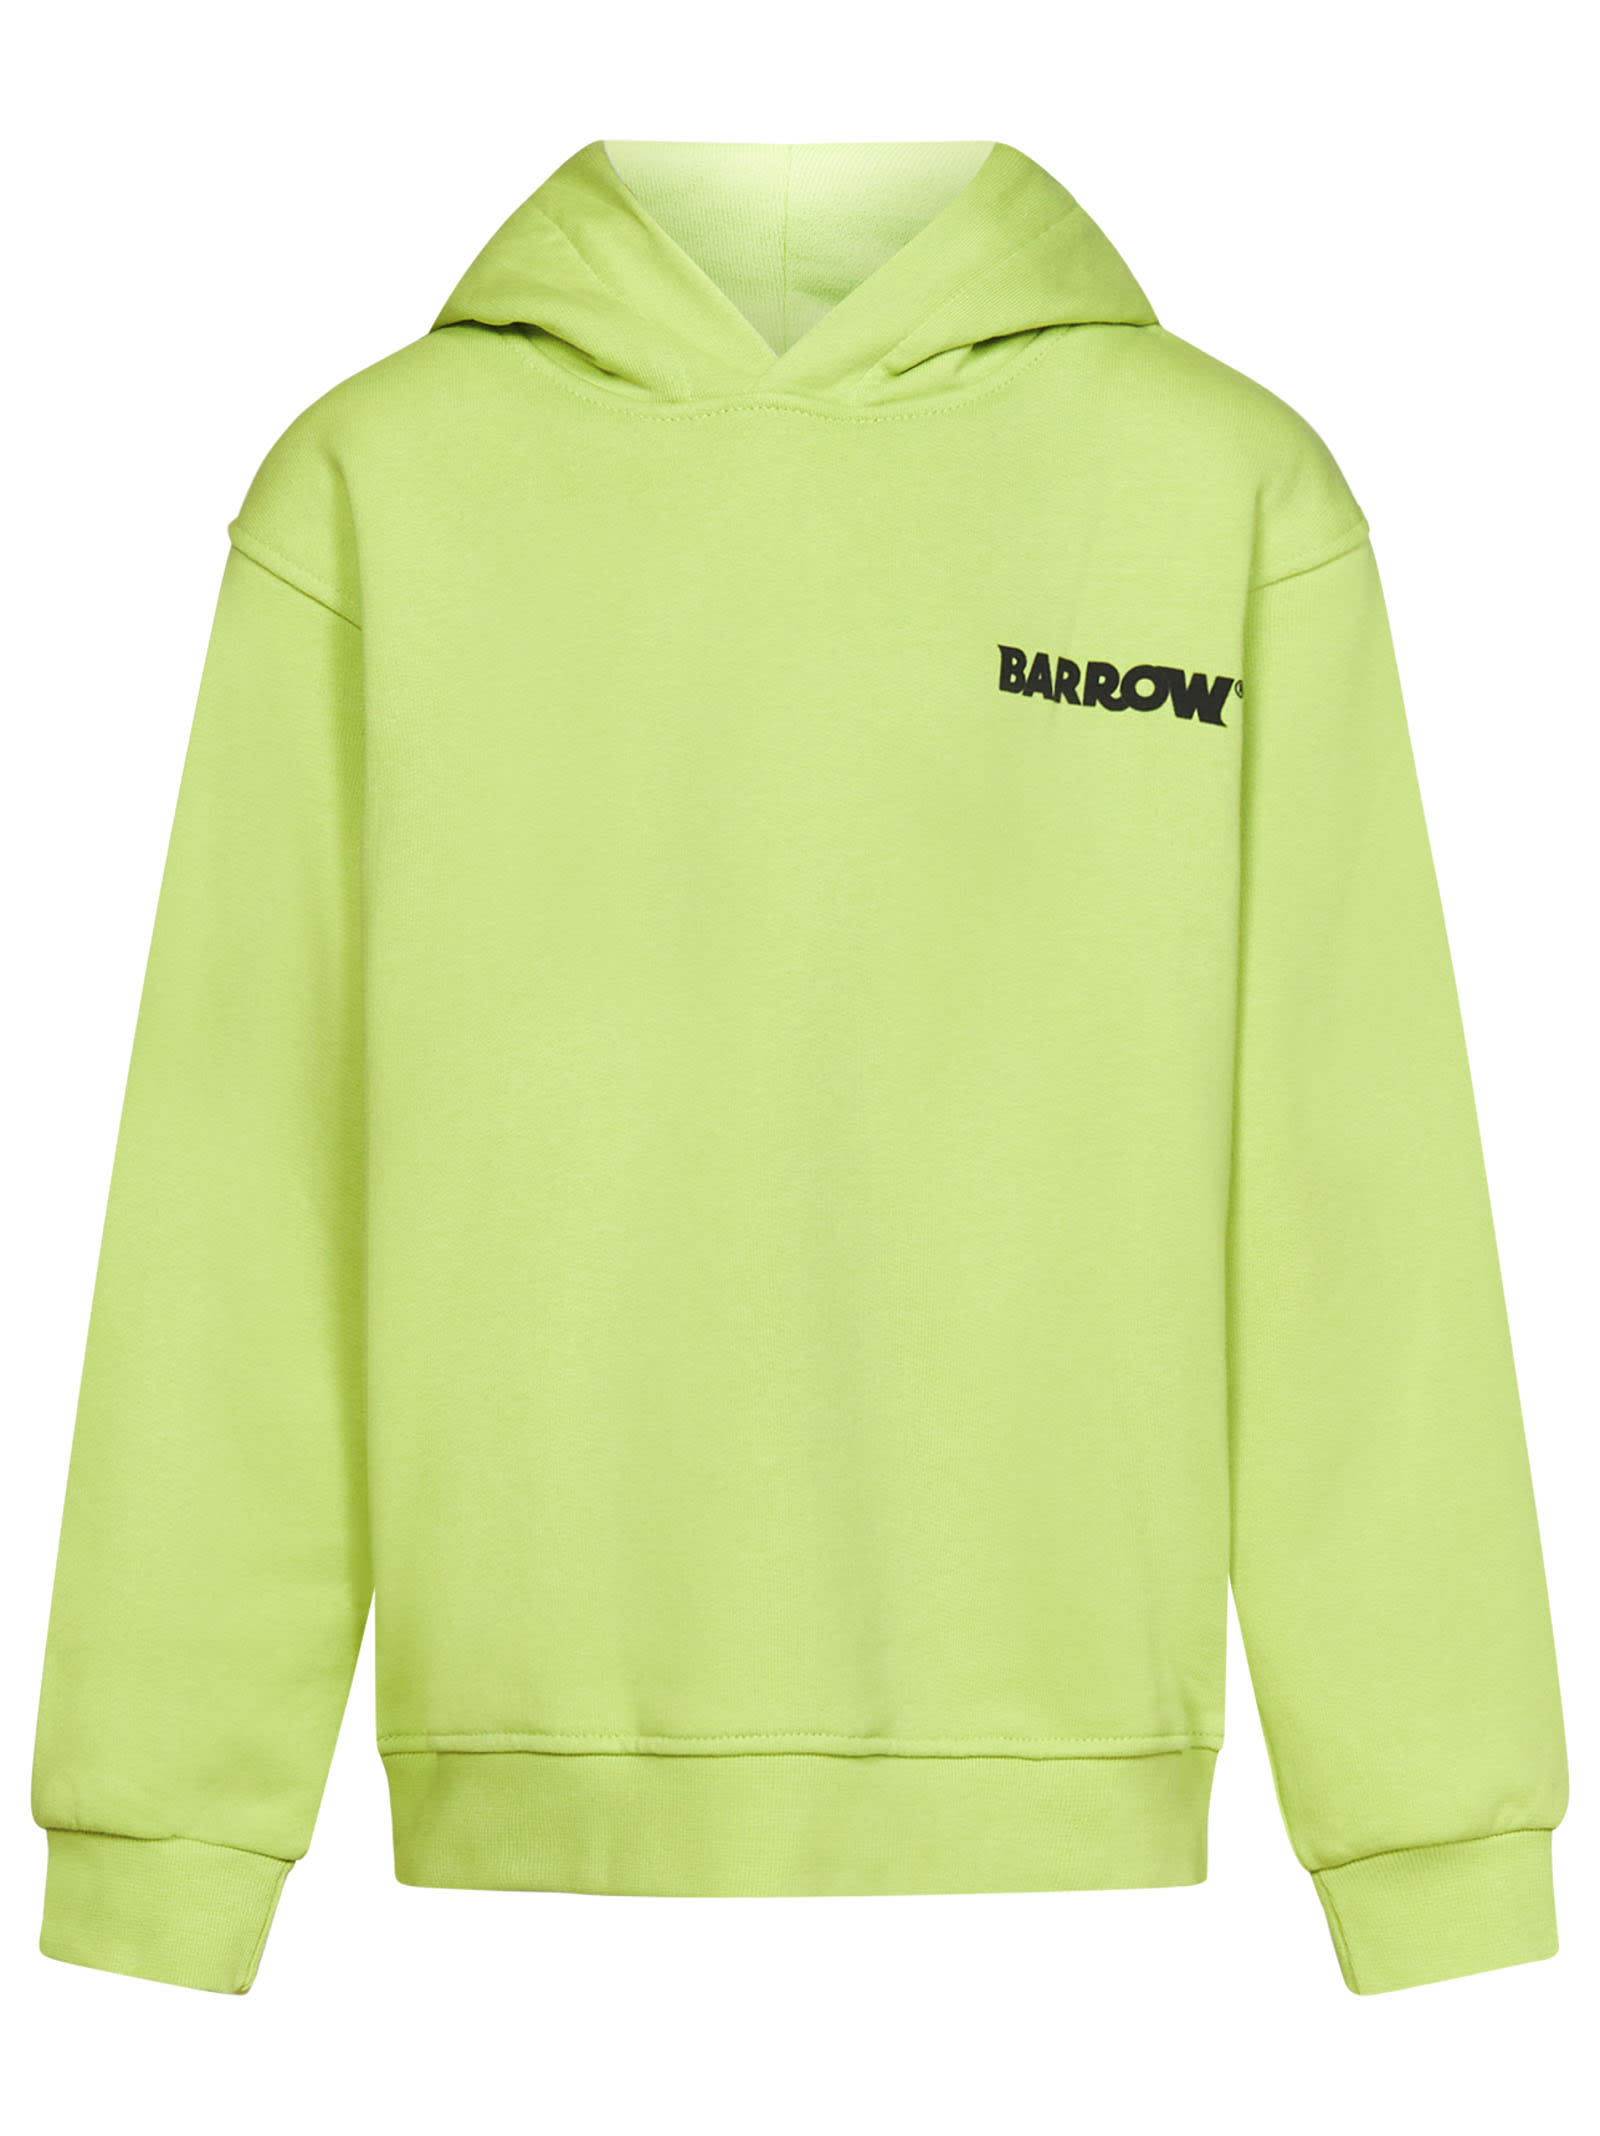 Barrow Kids' Sweatshirt In Green